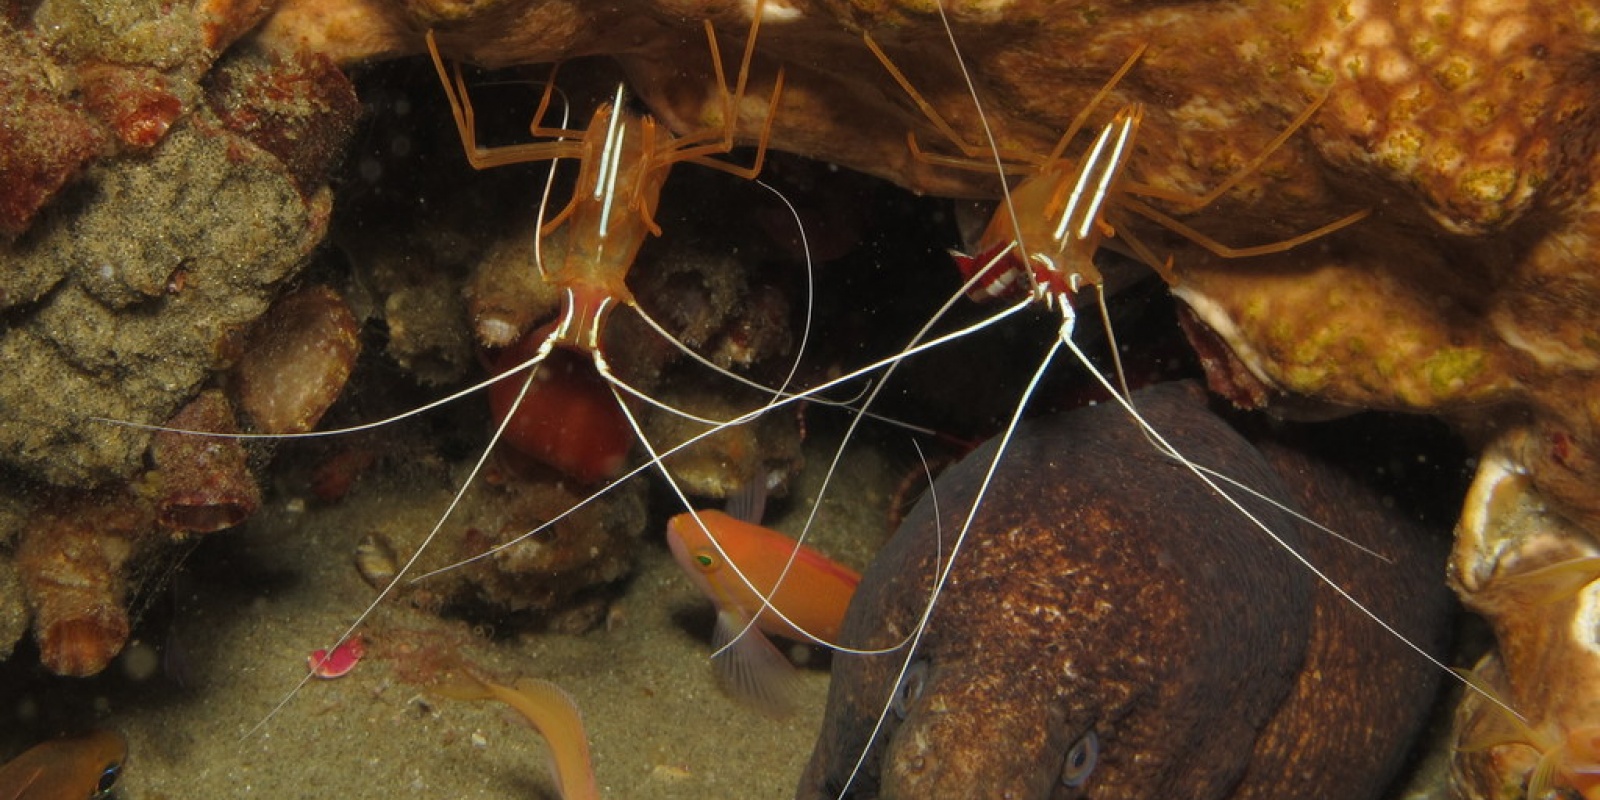 La murène entretient une relation commensale avec les crevettes nettoyeuses